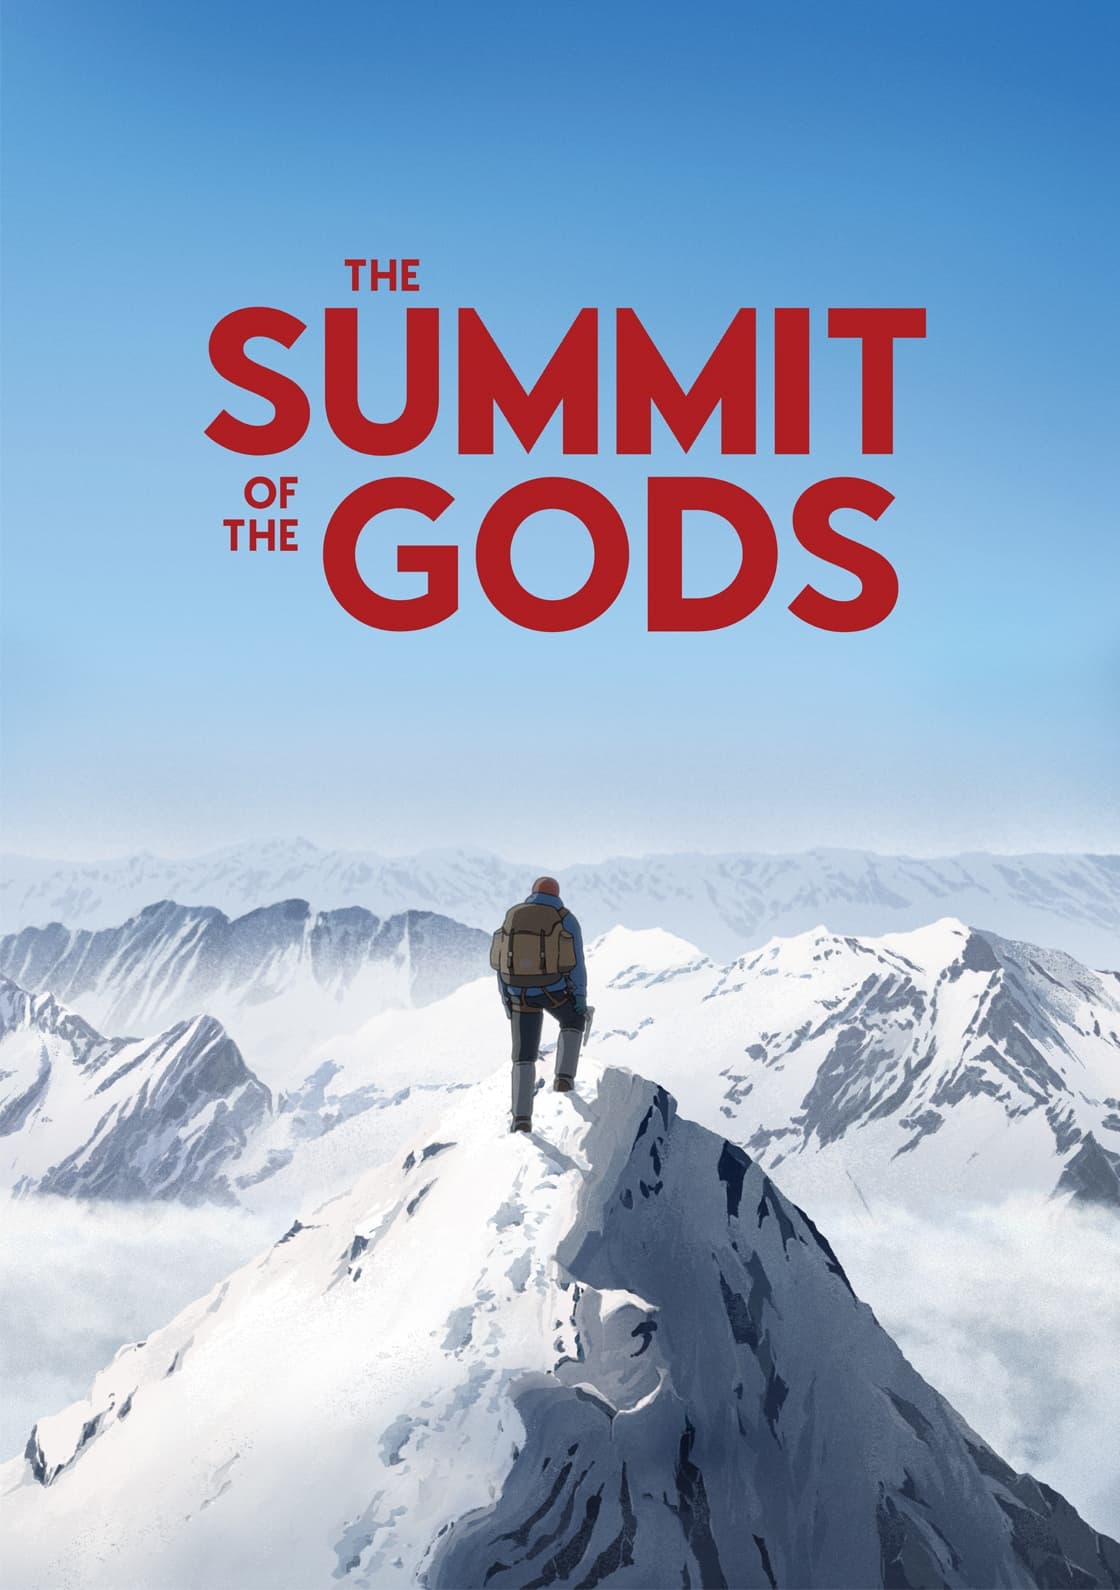 Caratula de Le Sommet des dieux (La cumbre de los dioses) 